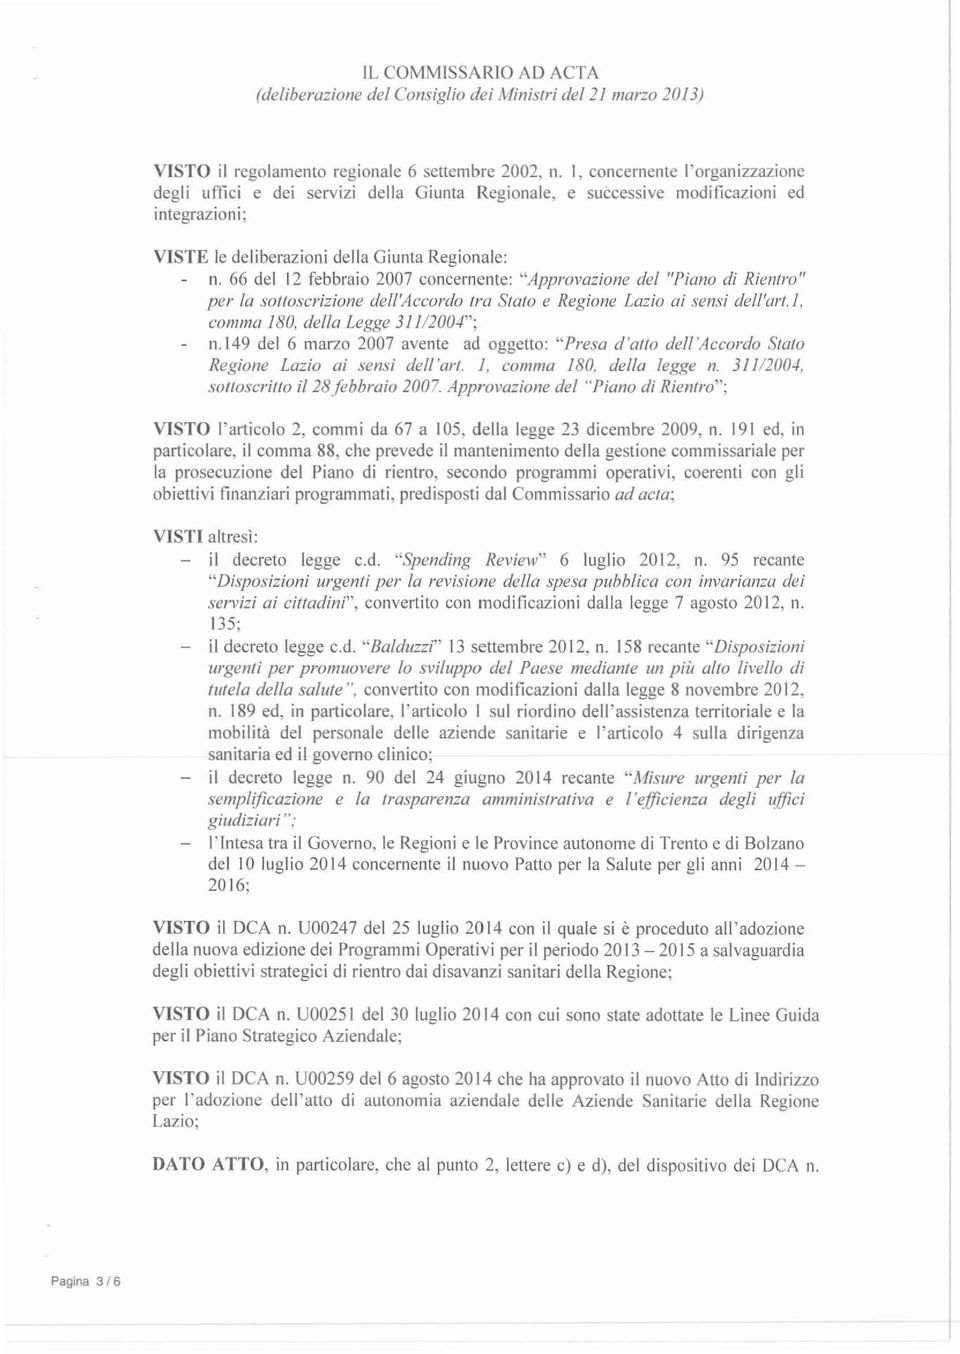 66 del 12 febbraio 2007 concernente: "Approvazione del "Piano di Rientro" per lo sottoscrizione dell'accordo ra Stato e Regione Lazio ai sensi dell'art., comma 180, della Legge 31 1/200-1"; n.